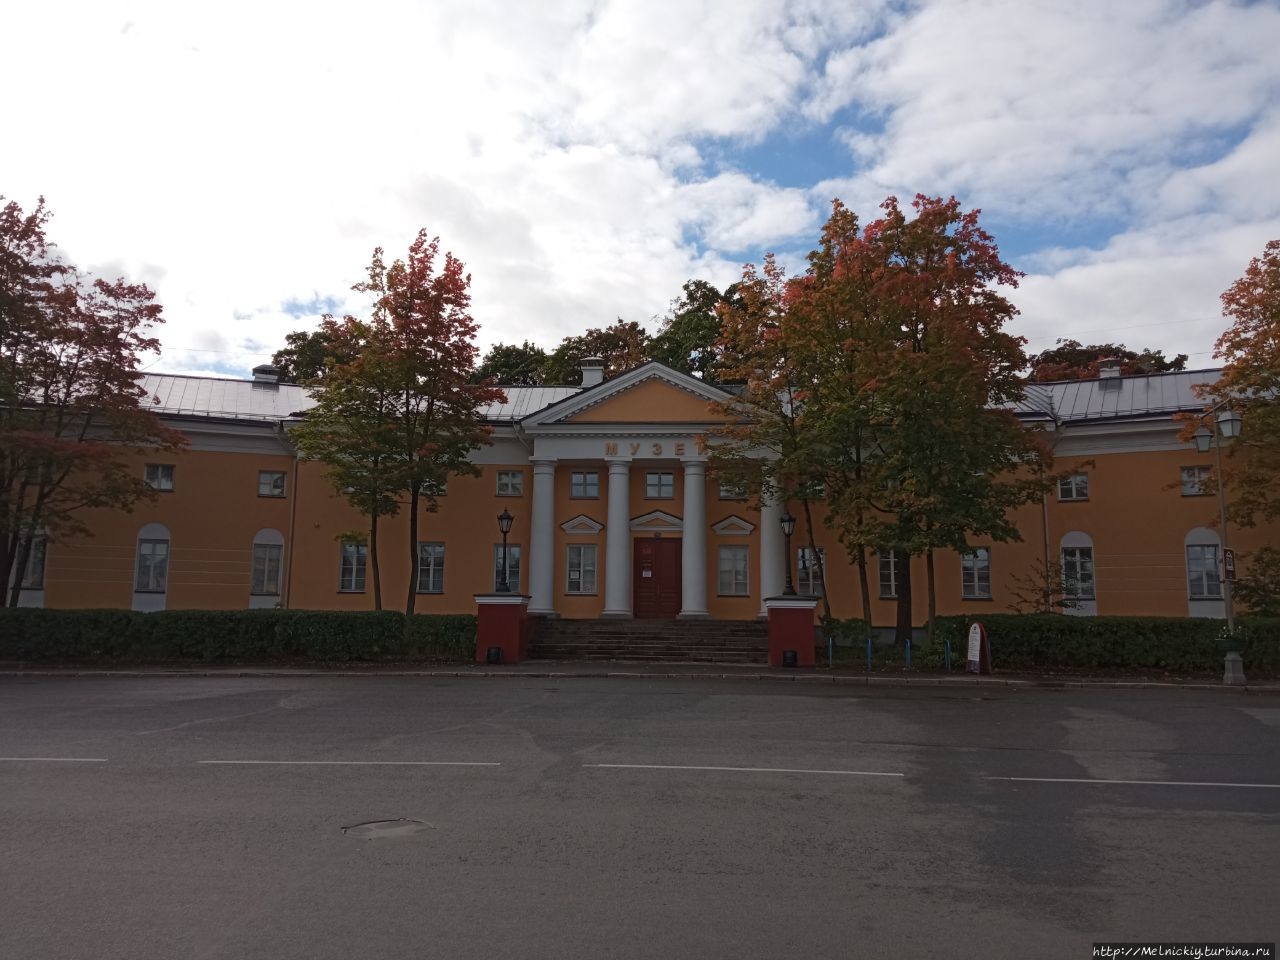 Национальный музей Республики Карелия / National Museum of the Republic of Karelia